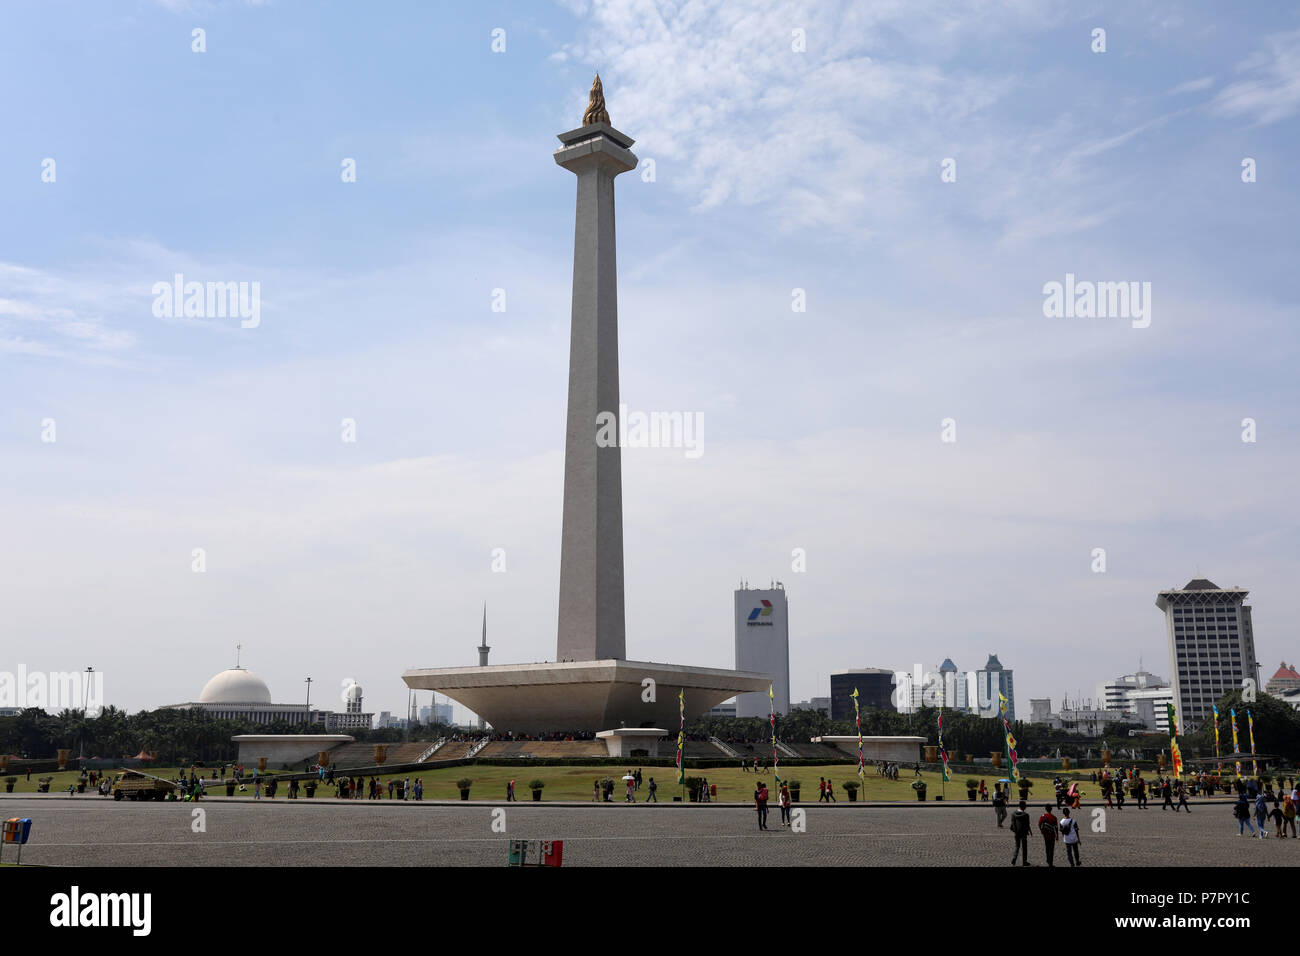 Jakarta, Indonesien - 20. Juni 2018: Das National Monument in Merdeka Square im Zentrum der indonesischen Hauptstadt Jakarta. Stockfoto